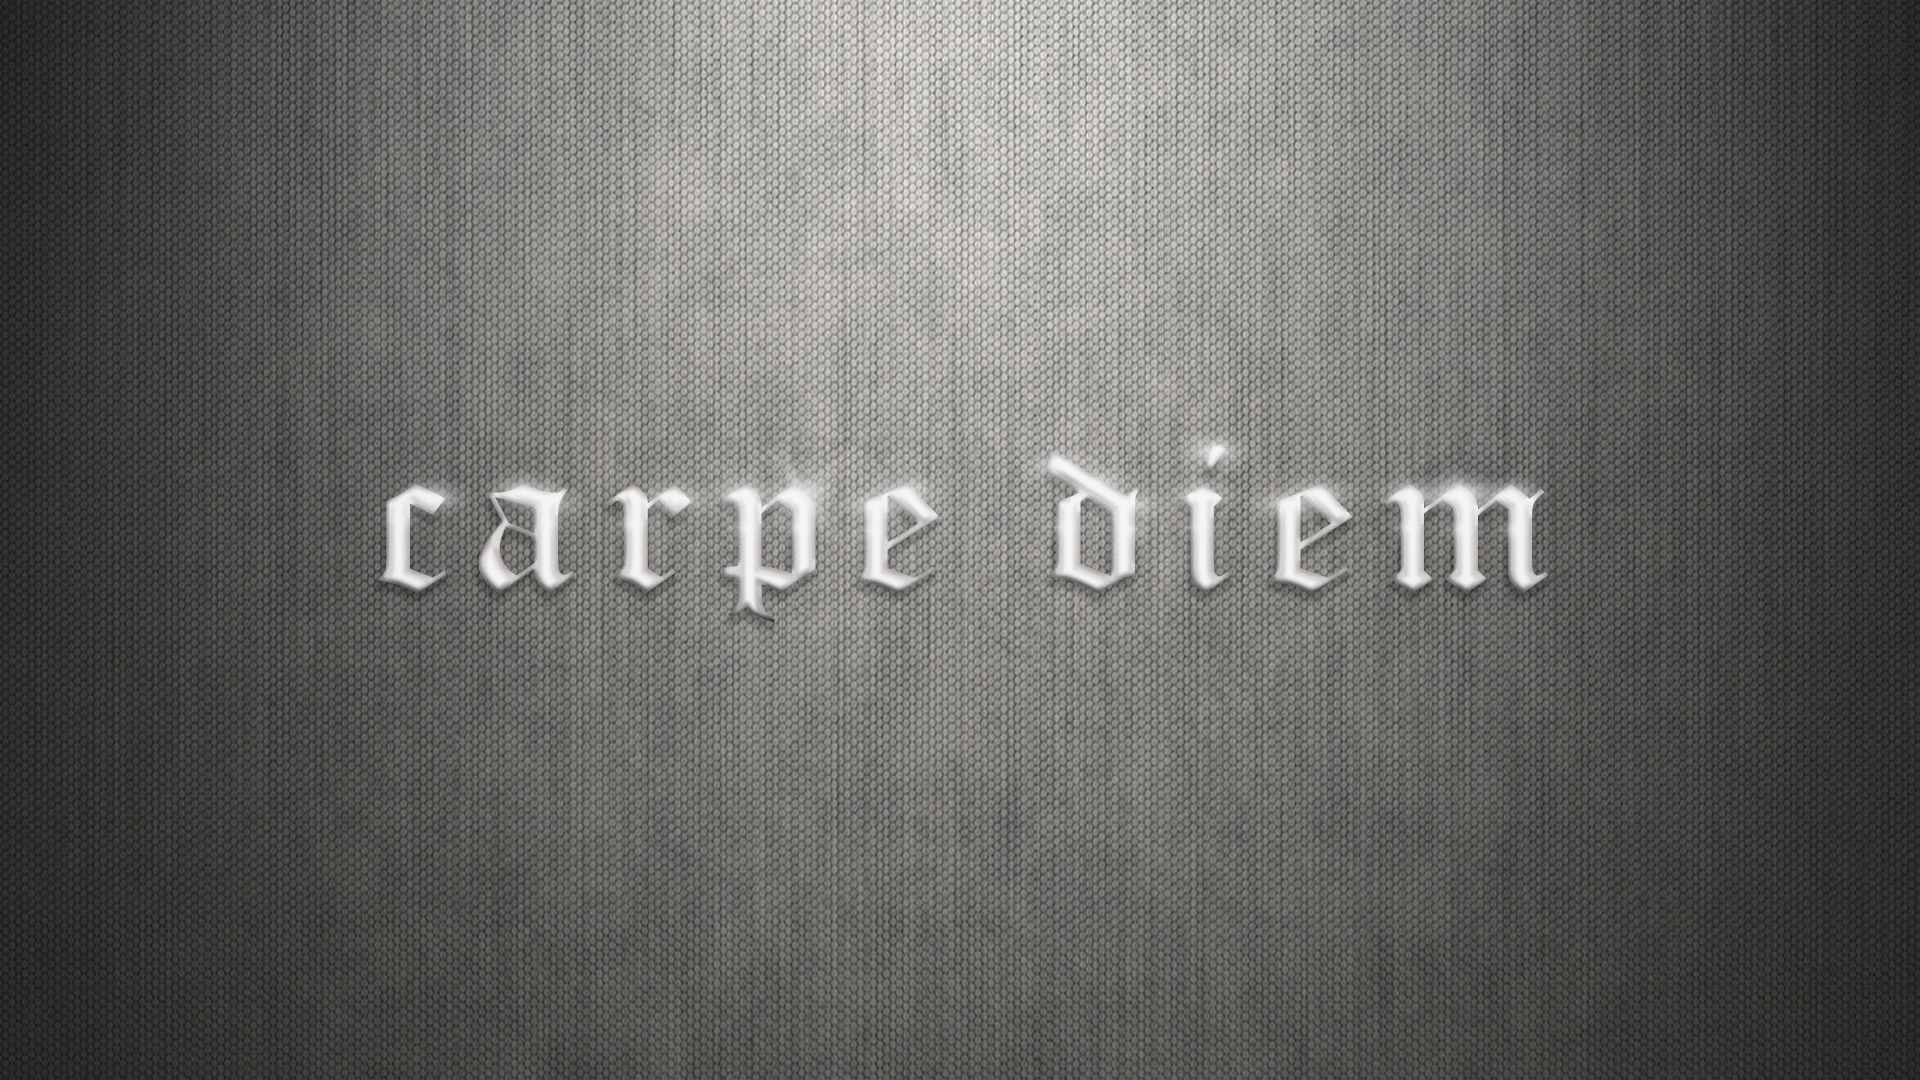 Carpe Diem Wallpaper HD, PixelsTalk.Net